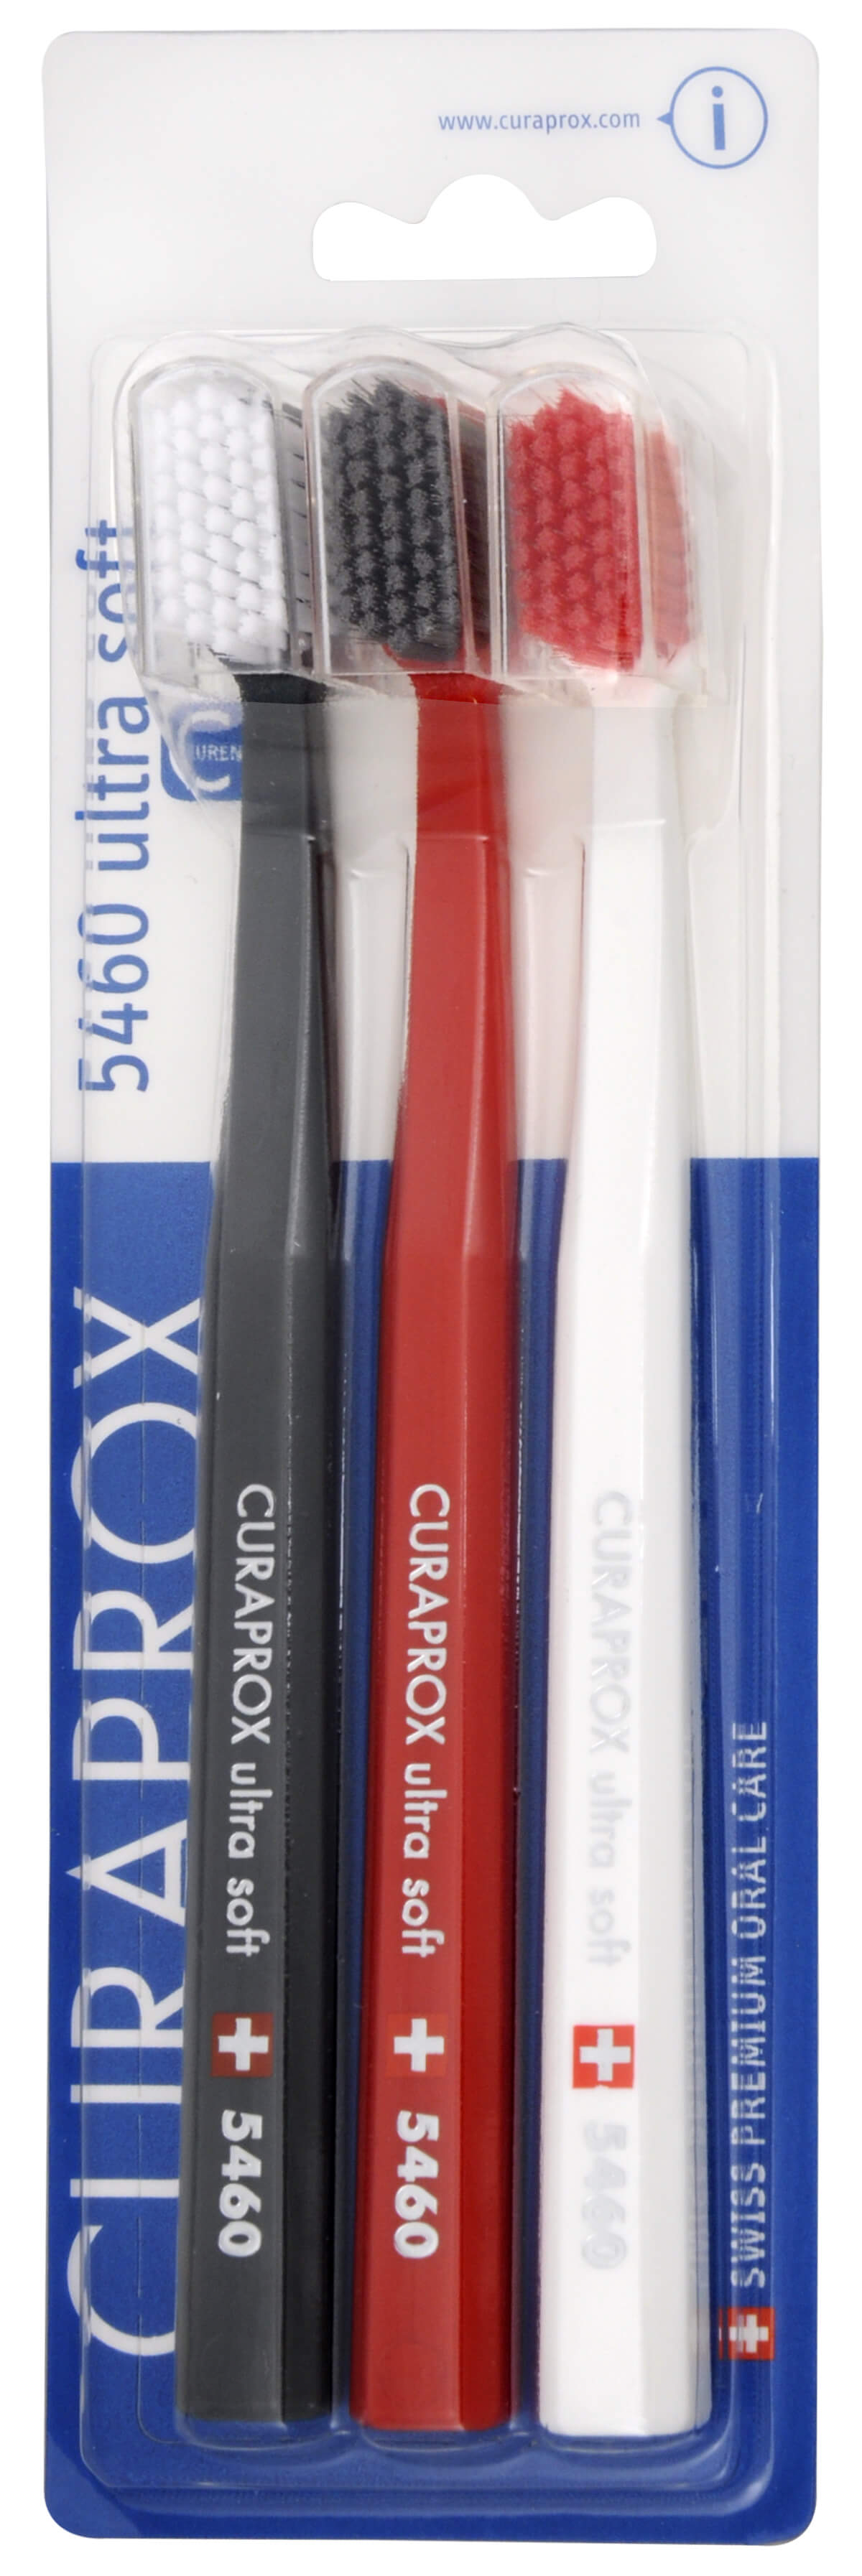 Zobrazit detail výrobku Curaprox Velmi jemný zubní kartáček 5460 Ultra Soft 3 ks